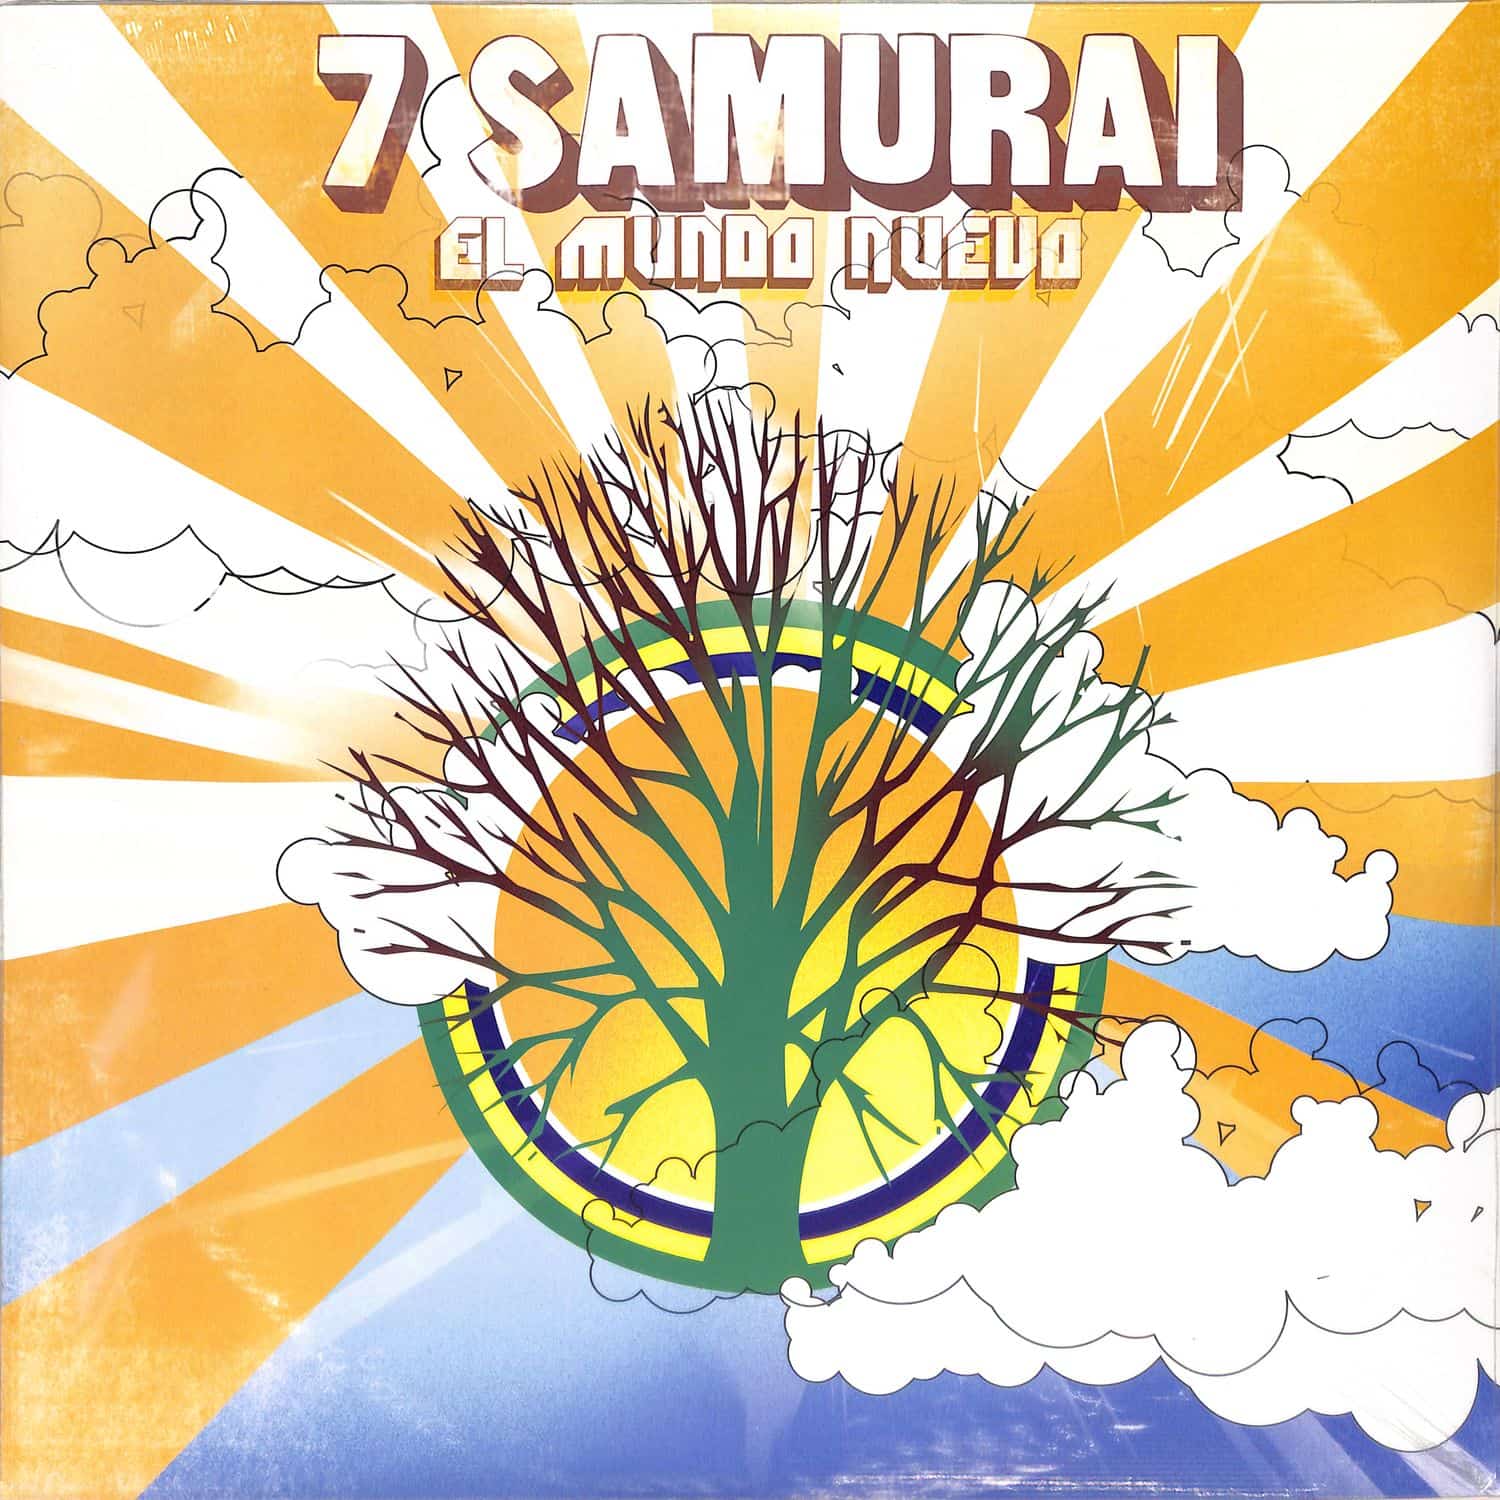 7 Samurai - EL MUNDO NUEVO 